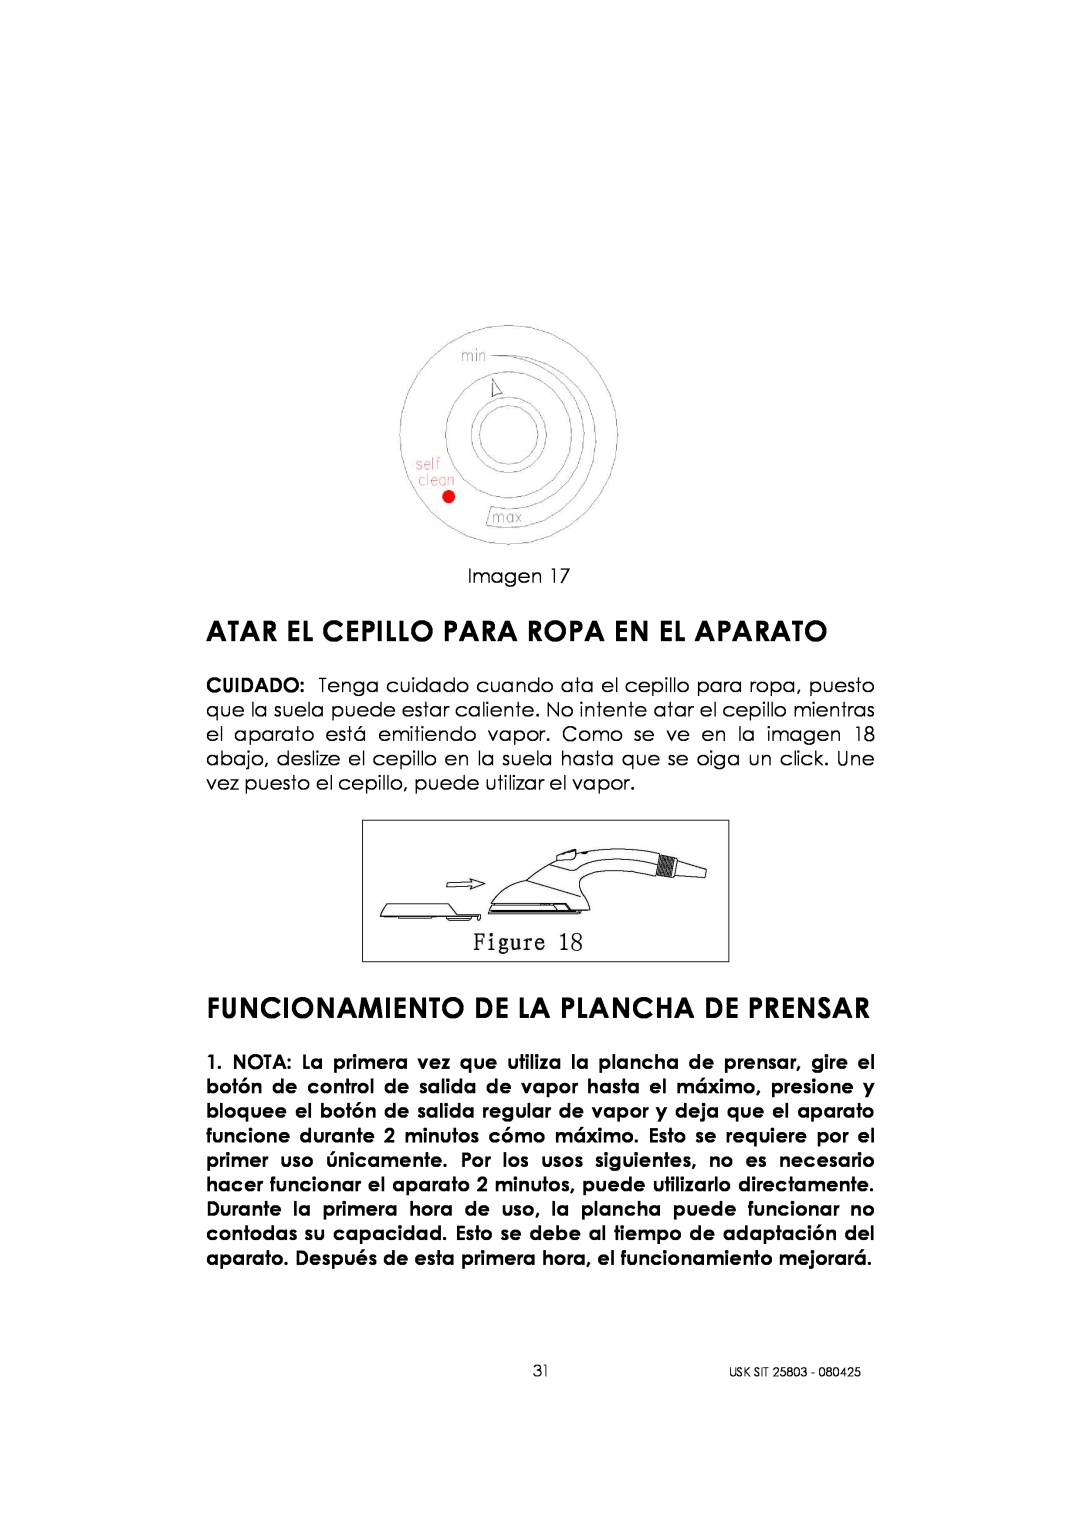 Kalorik USK SIT 25803 manual Atar El Cepillo Para Ropa En El Aparato, Funcionamiento De La Plancha De Prensar 